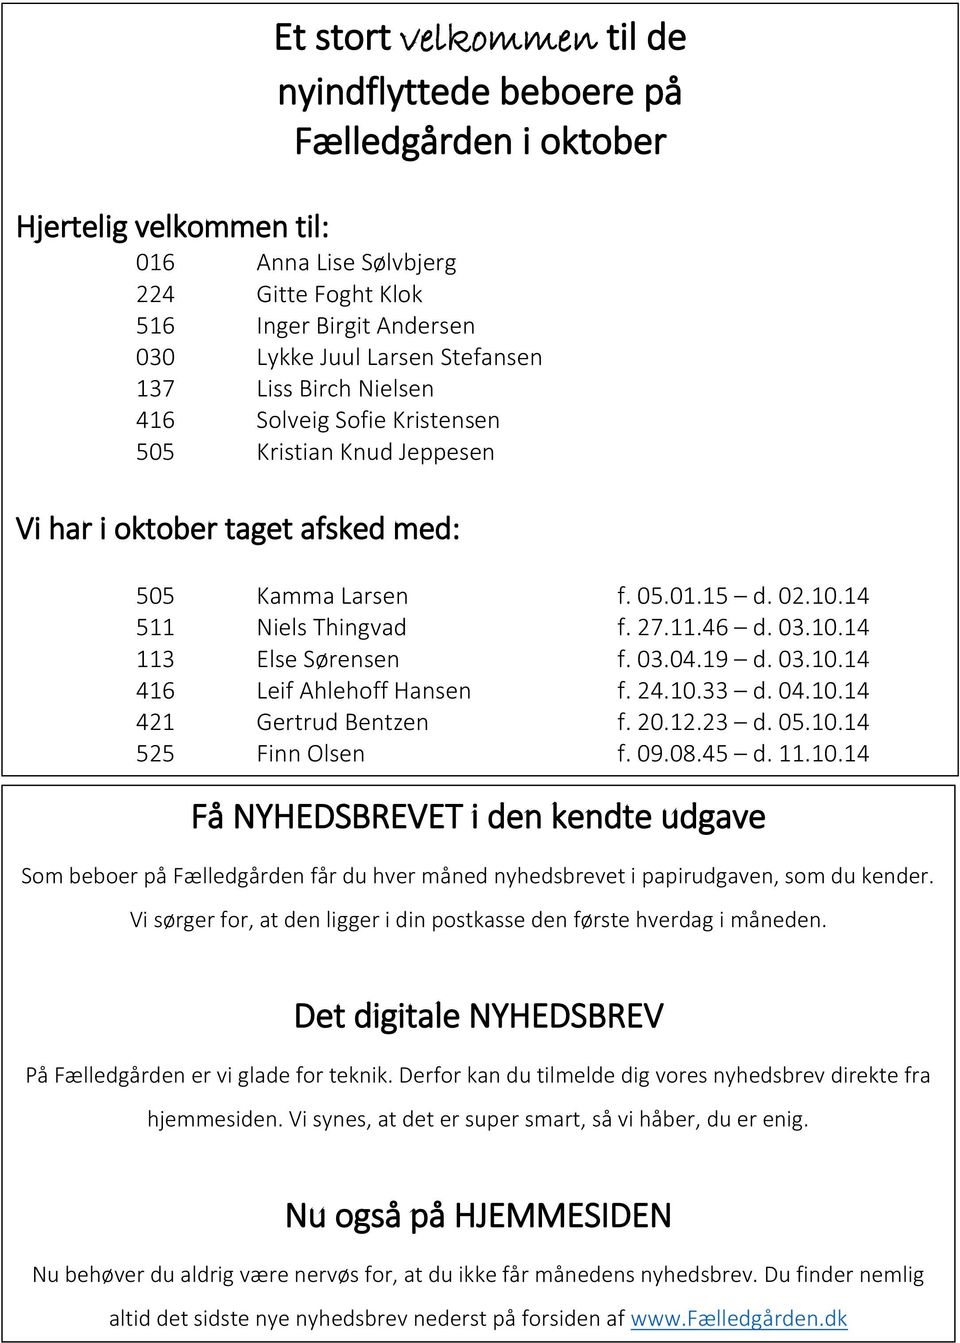 416 Solveig Sofie Kristensen 505 Kristian Knud Jeppesen Vi har i oktober taget afsked med: 505 Kamma Larsen f. 05.01.15 d. 02.10.14 511 Niels Thingvad f. 27.11.46 d. 03.10.14 113 Else Sørensen f. 03.04.